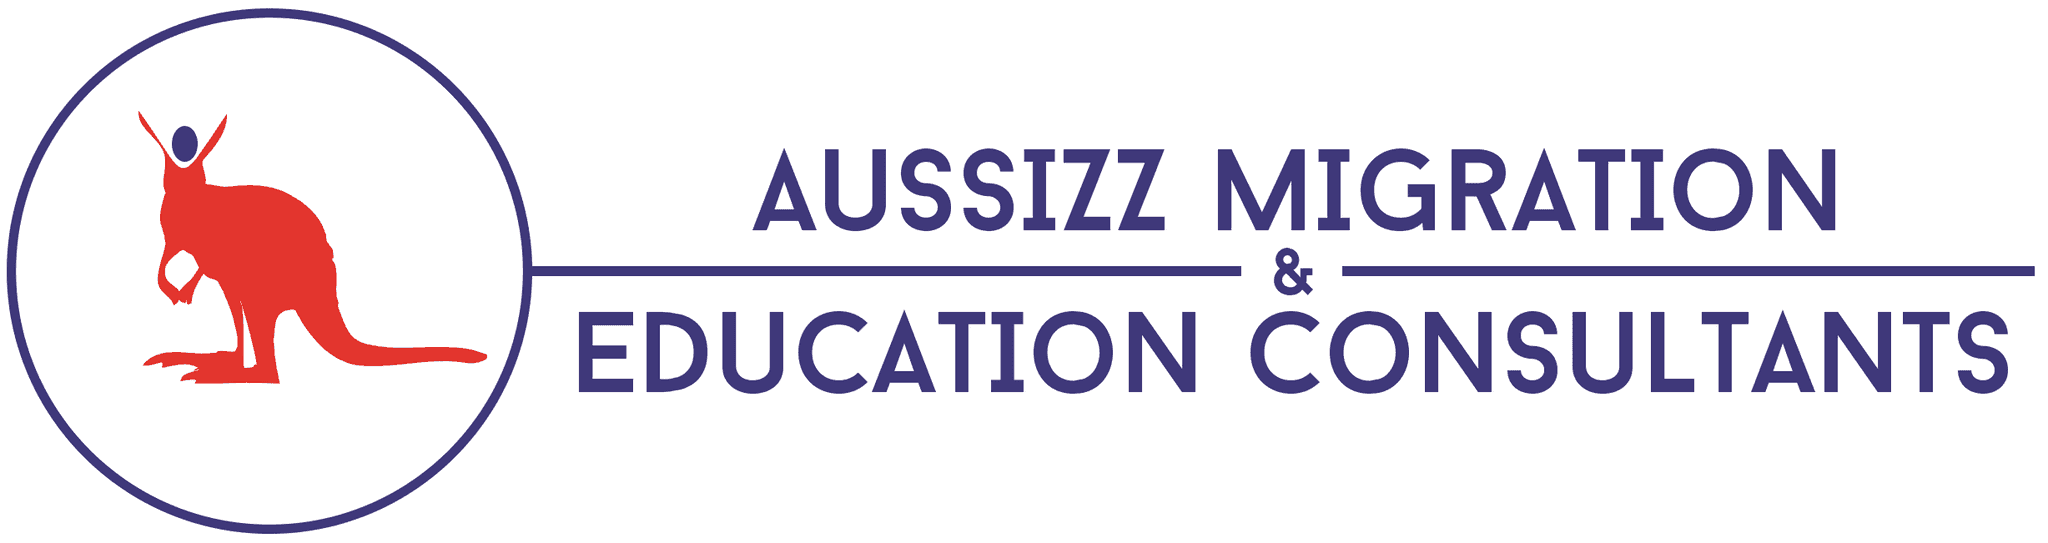 Aussizz Migration logo